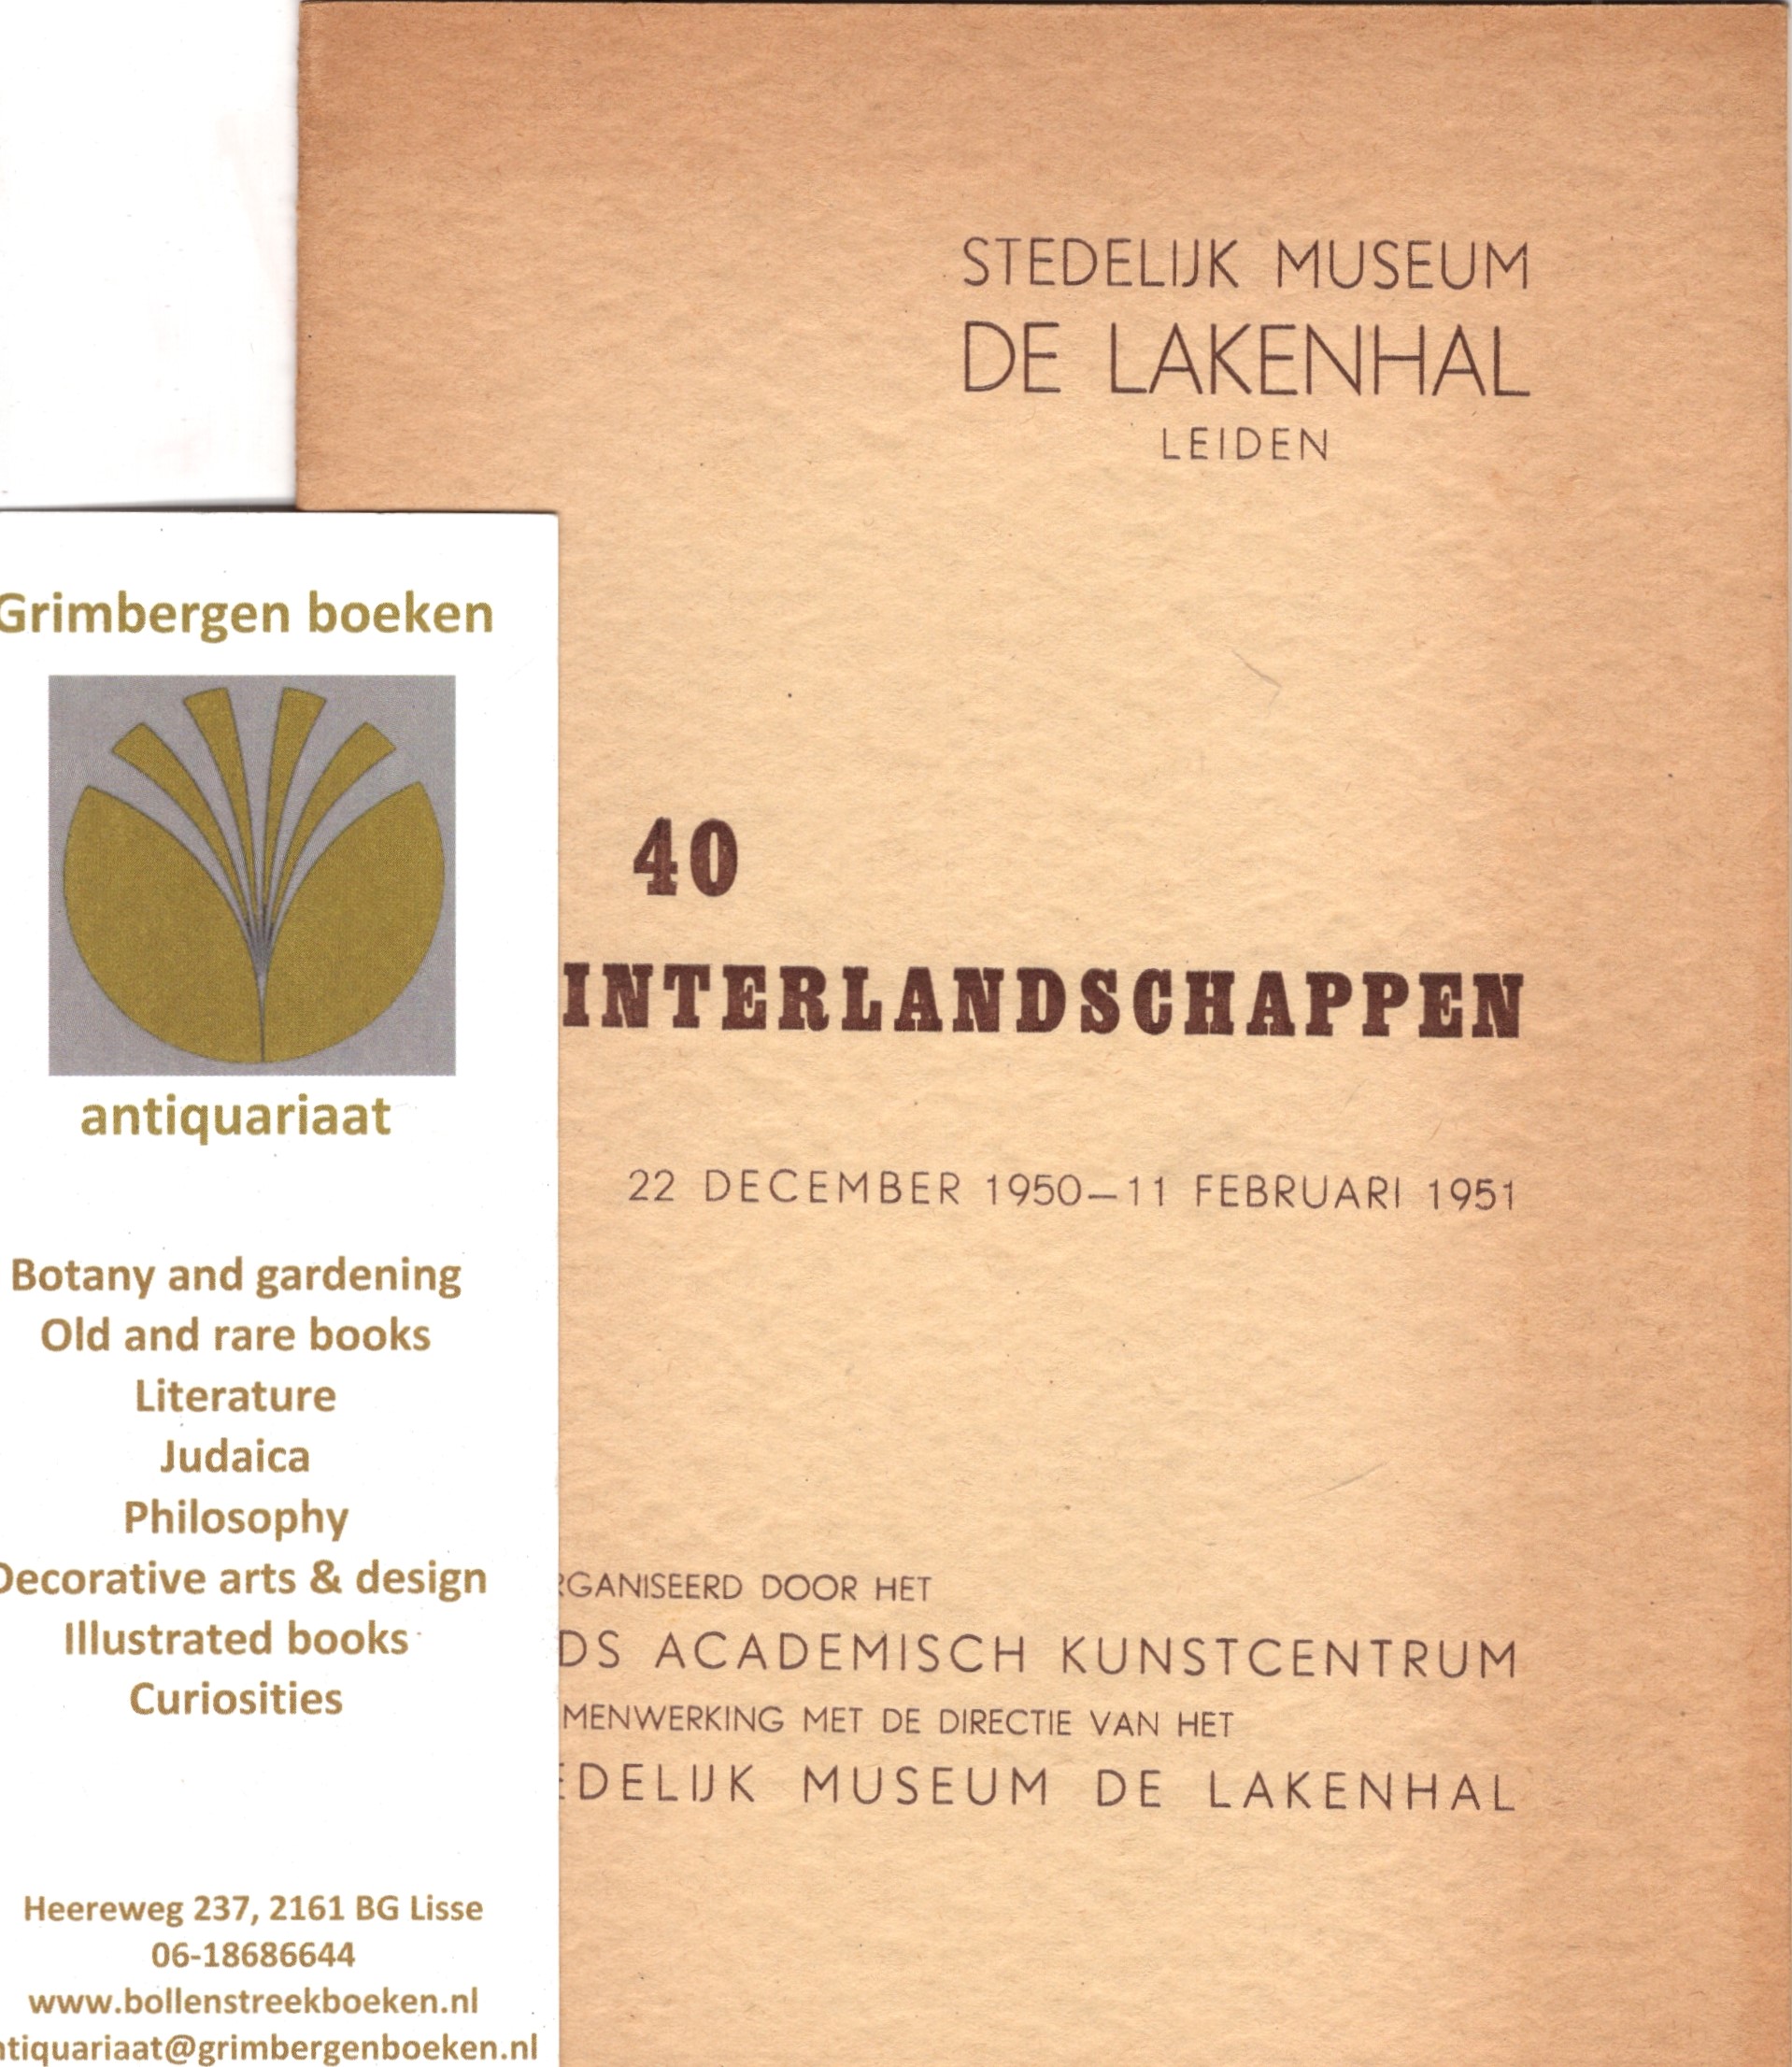  - 40 winterlandschappen, catalogus Stedelijk museum De Lakenhal Leiden 1950-1951